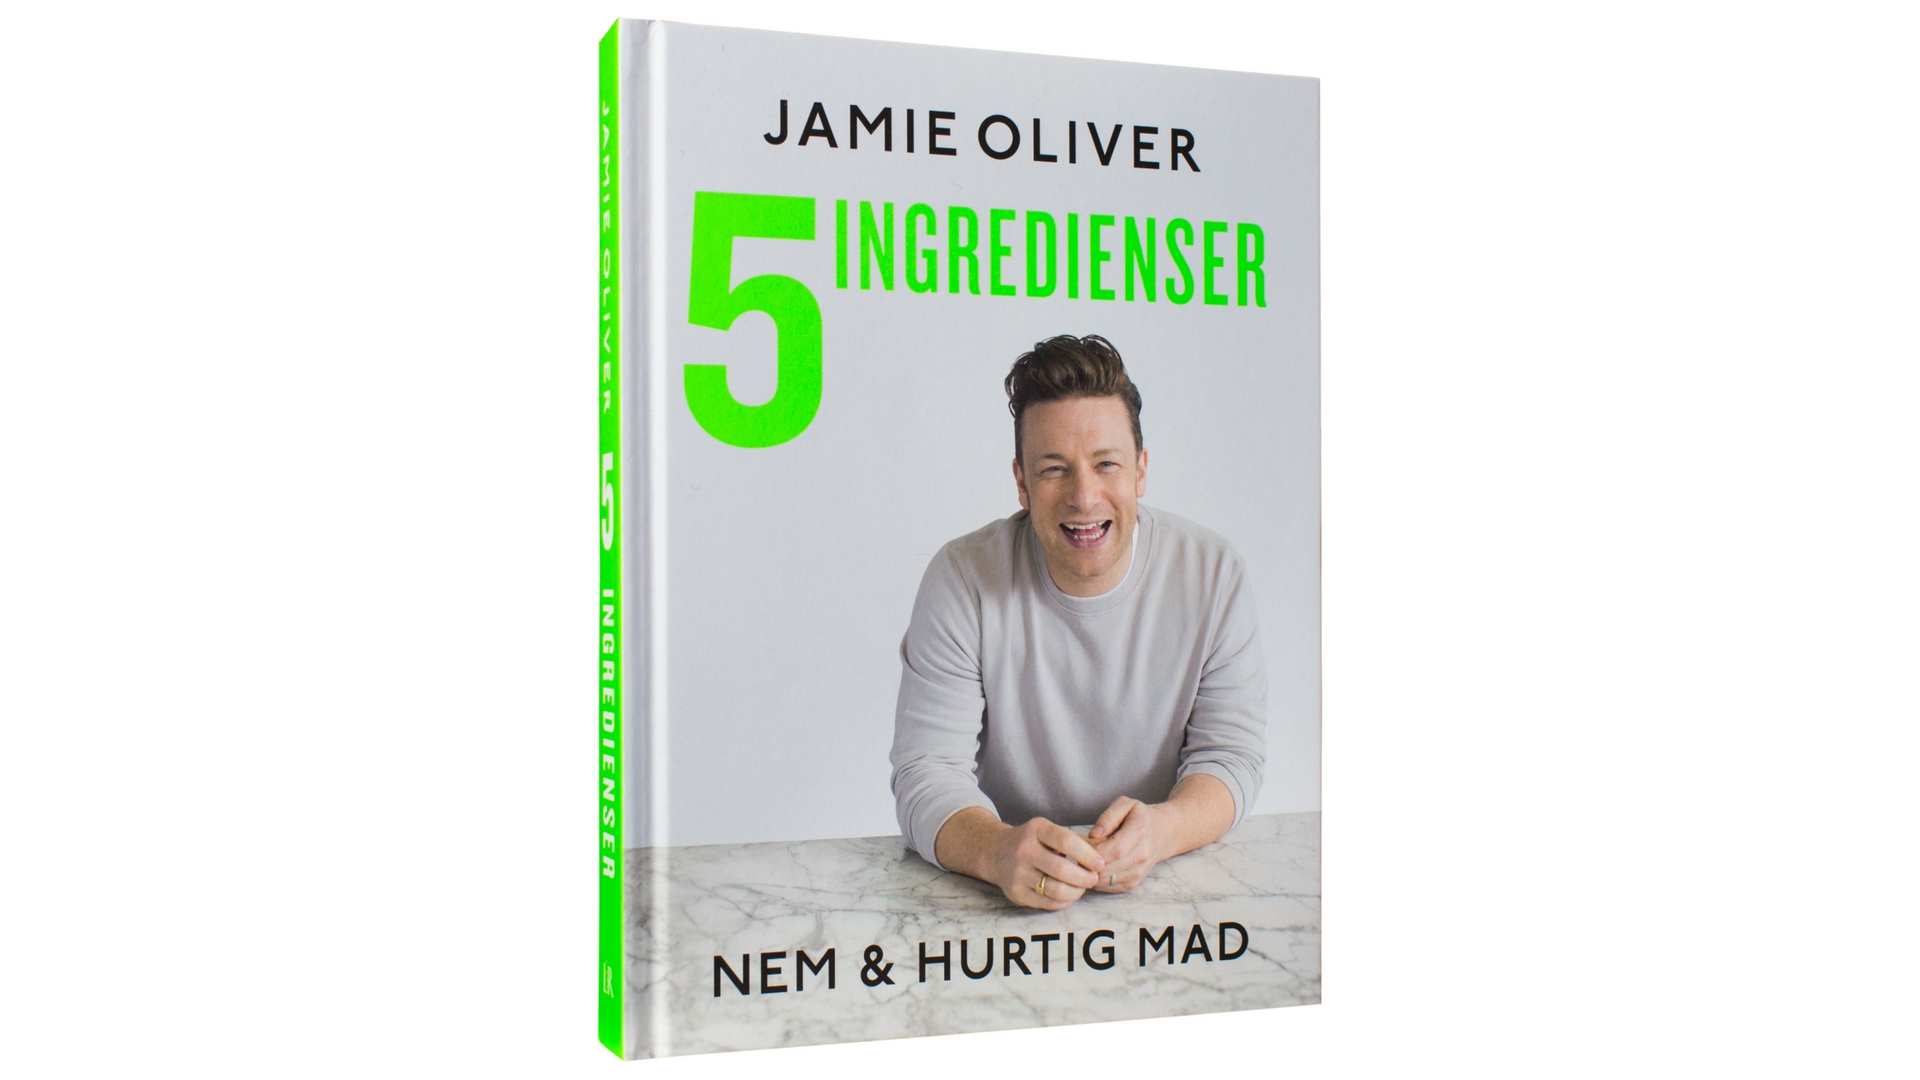 Jamie Oliver, 5 ingredienser, linguine